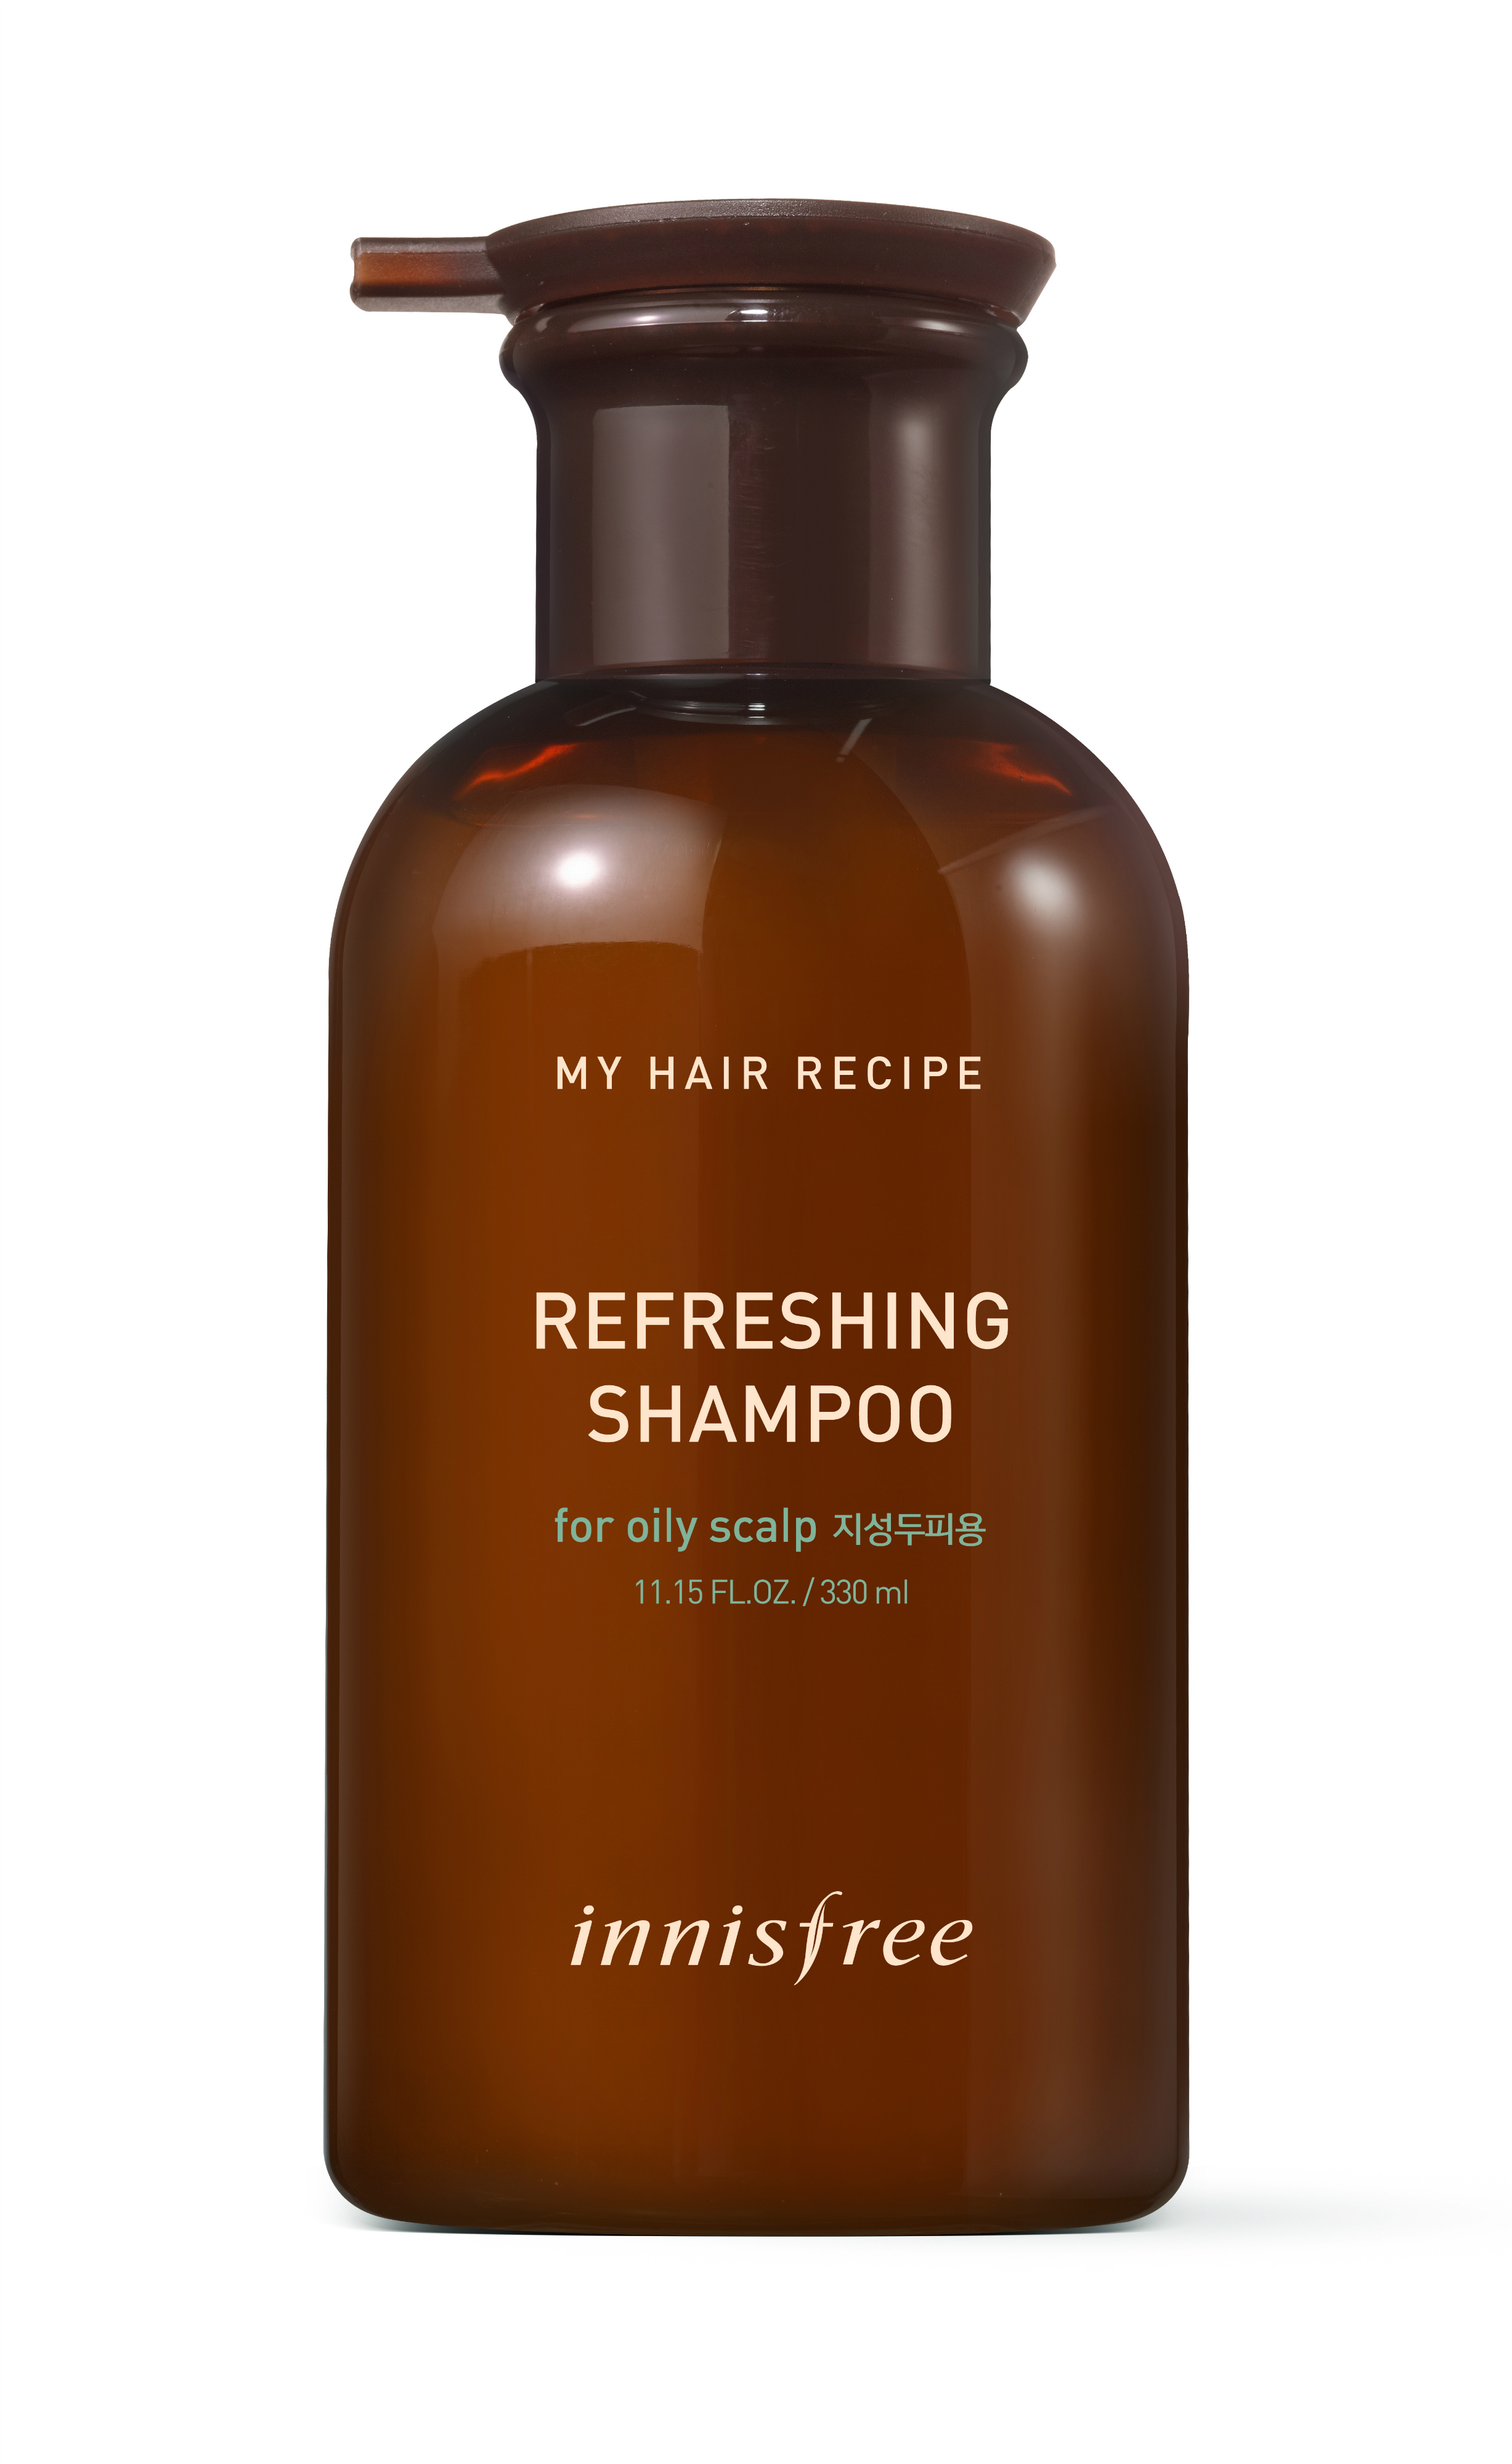 innisfree My Hair Recipe Refreshing Shampoo (RM48.00/330ml)-Pamper.my